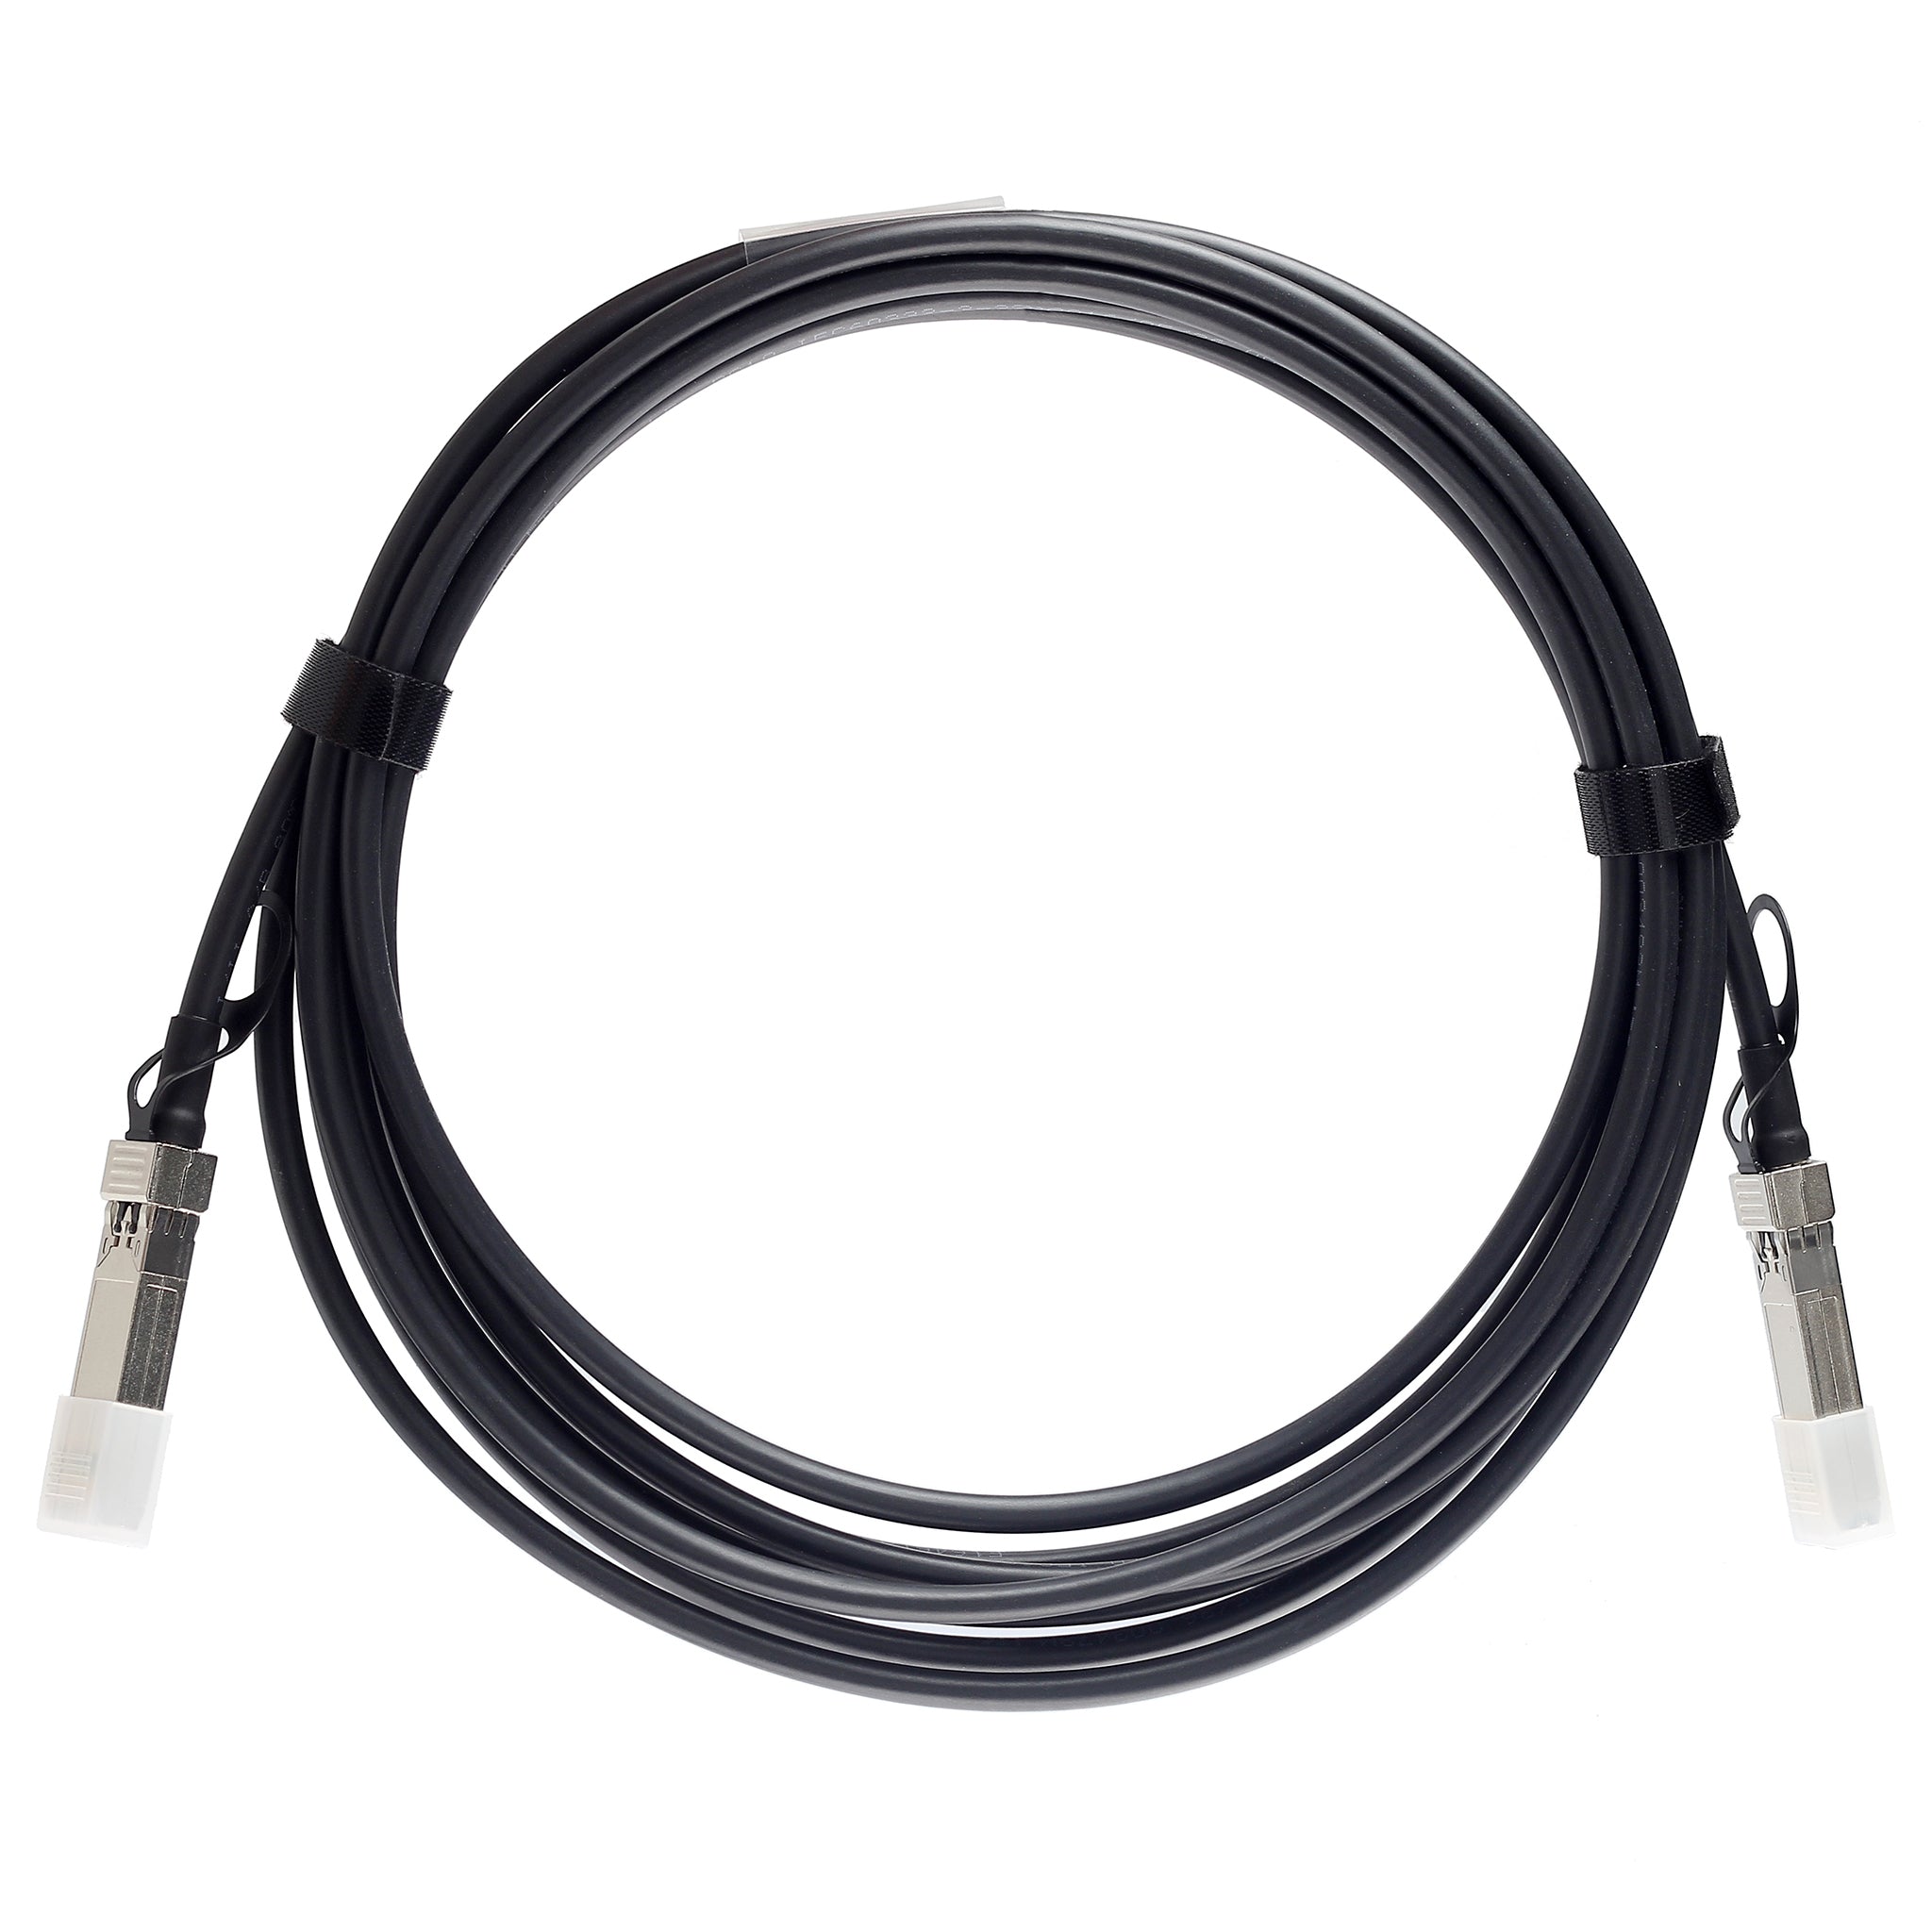 QSFP-40G-C5M-C - 5m Alcatel-Lucent (Nokia) Compatible 40G QSFP+ Passive Direct Attach Copper Twinax Cable